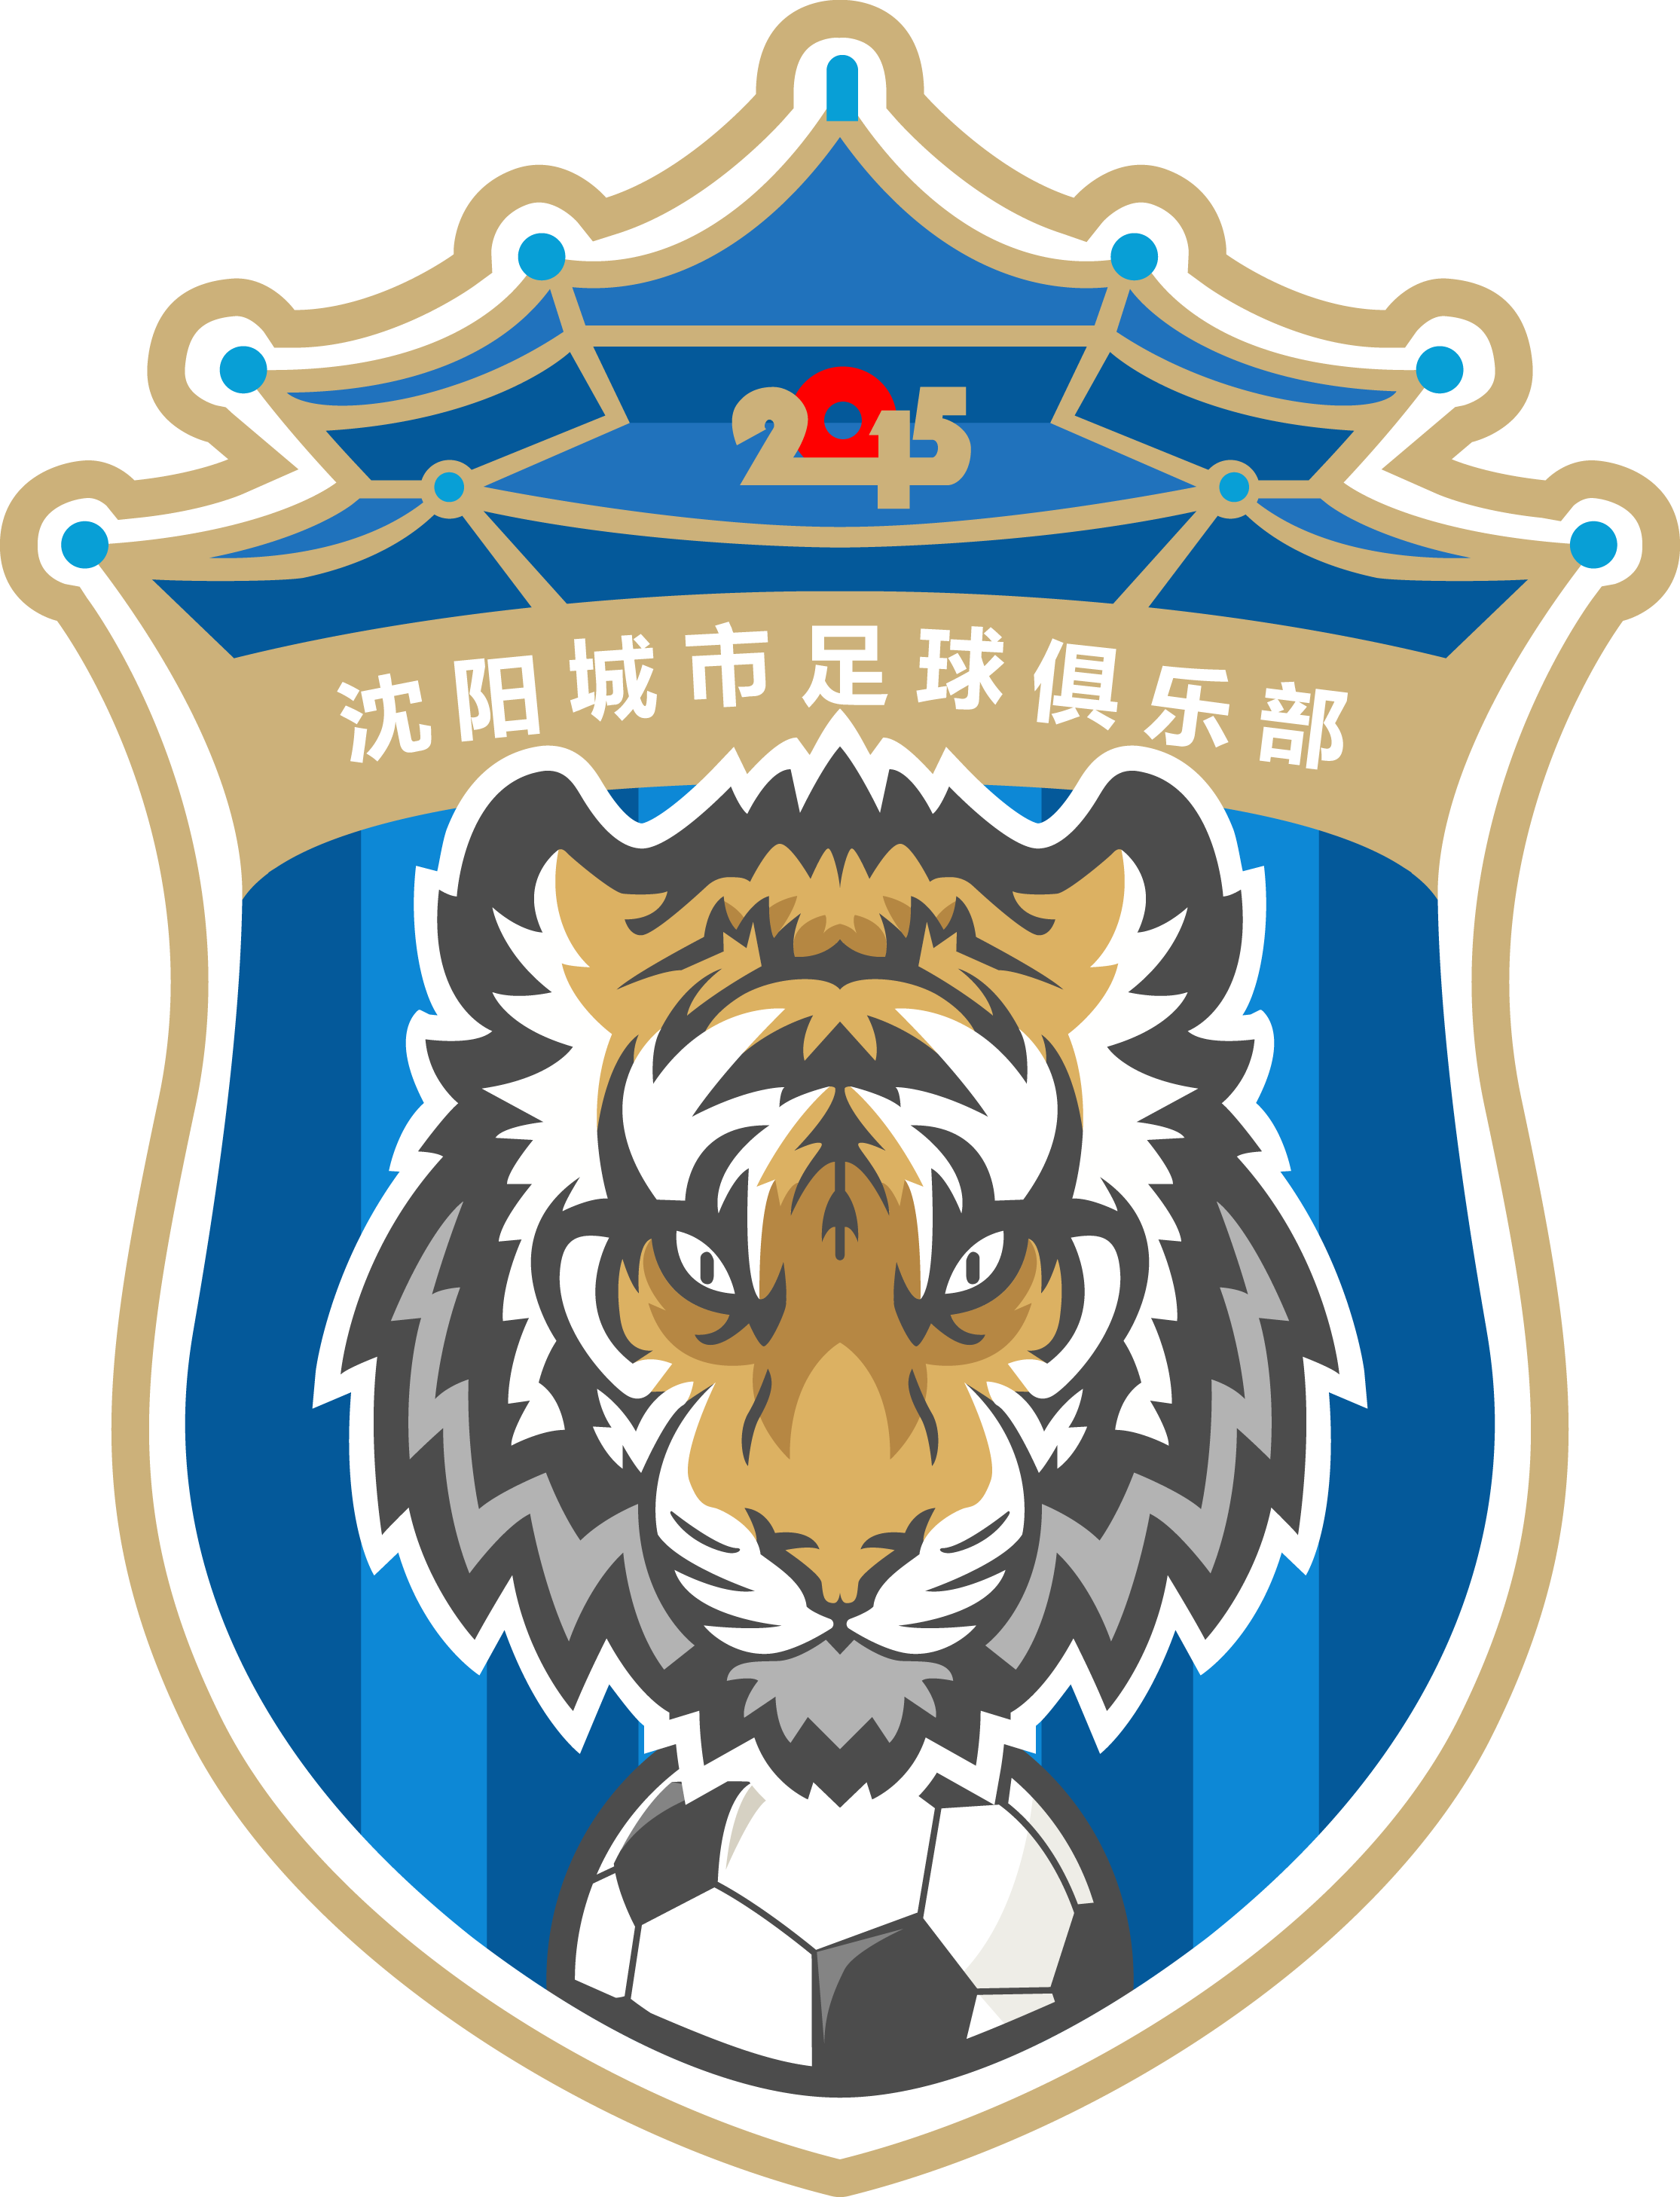 瀋陽城市足球俱樂部